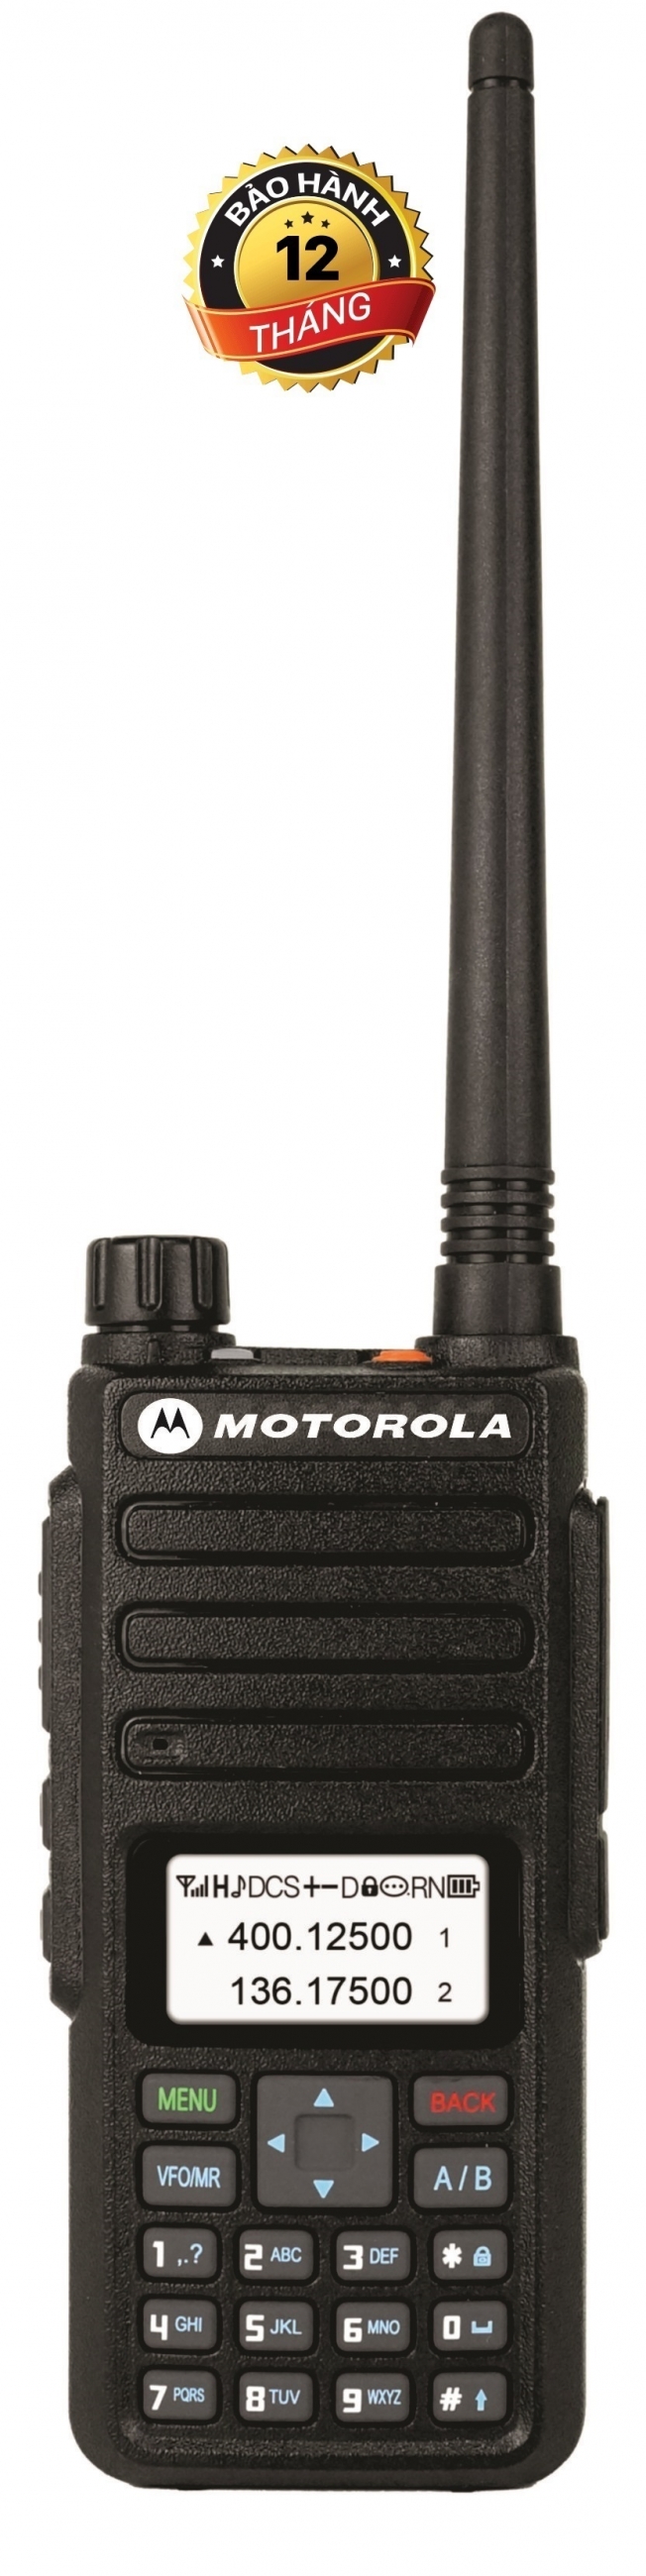 Bộ đàm Motorola UV-CP1895IS (Công suất lớn siêu mạnh, Băng tần kép-Dua Band, chức năng DTMF, Cự ly liên lạc siêu xa).